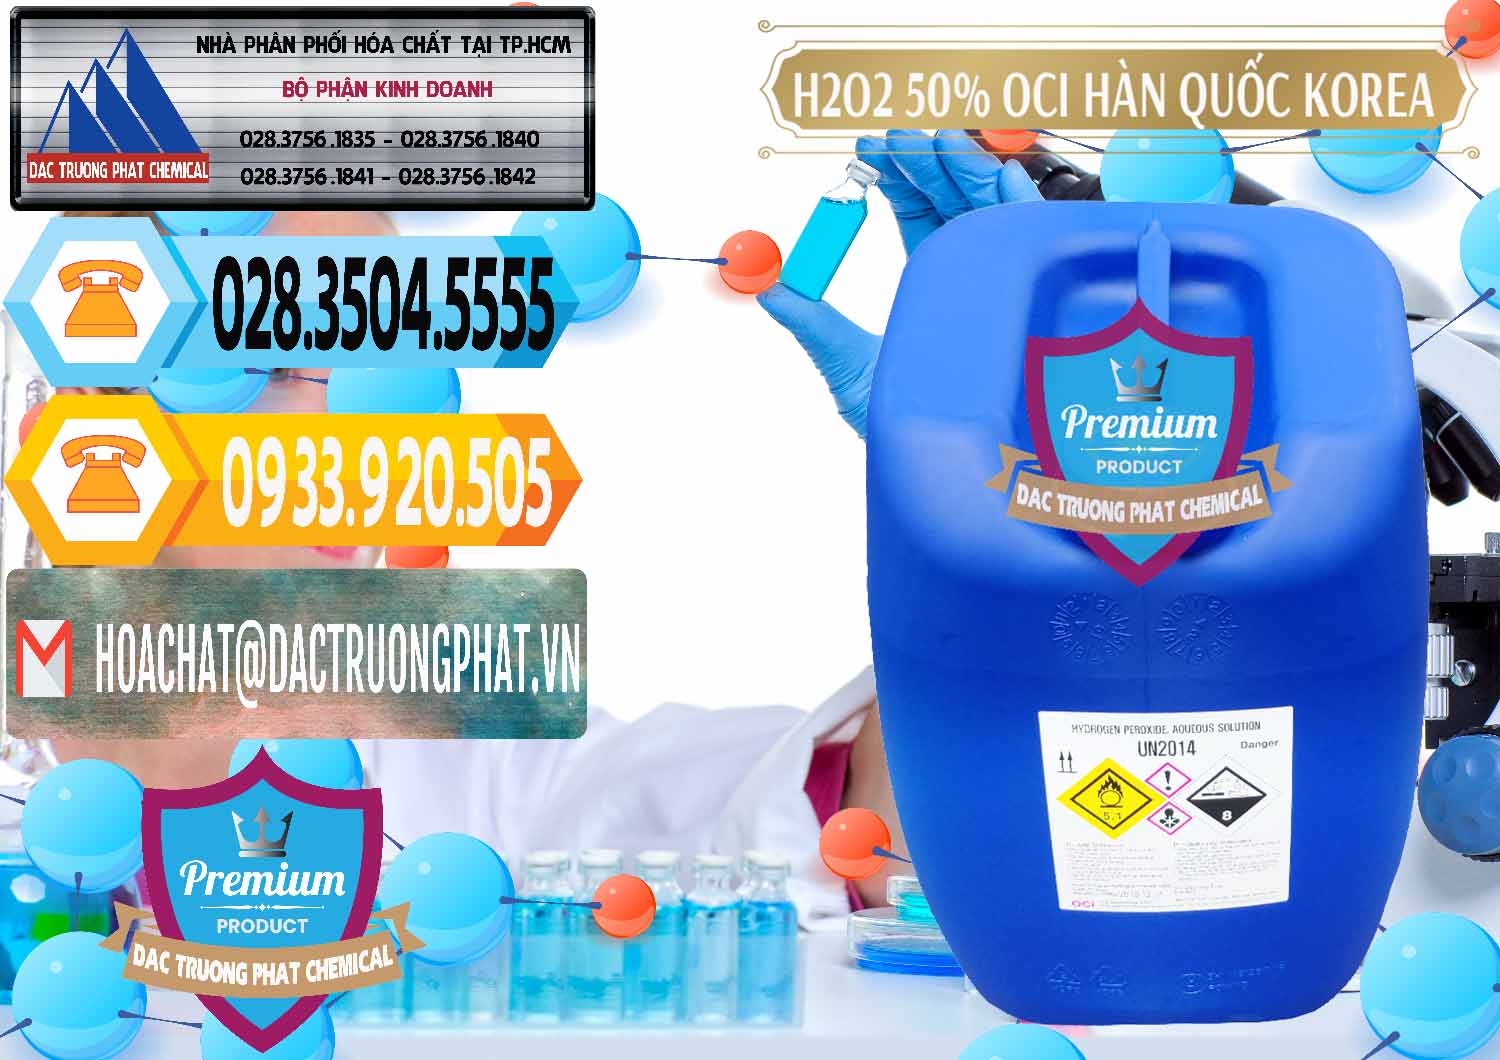 Công ty chuyên phân phối _ bán H2O2 - Hydrogen Peroxide 50% OCI Hàn Quốc Korea - 0075 - Nhà phân phối - cung ứng hóa chất tại TP.HCM - hoachattayrua.net